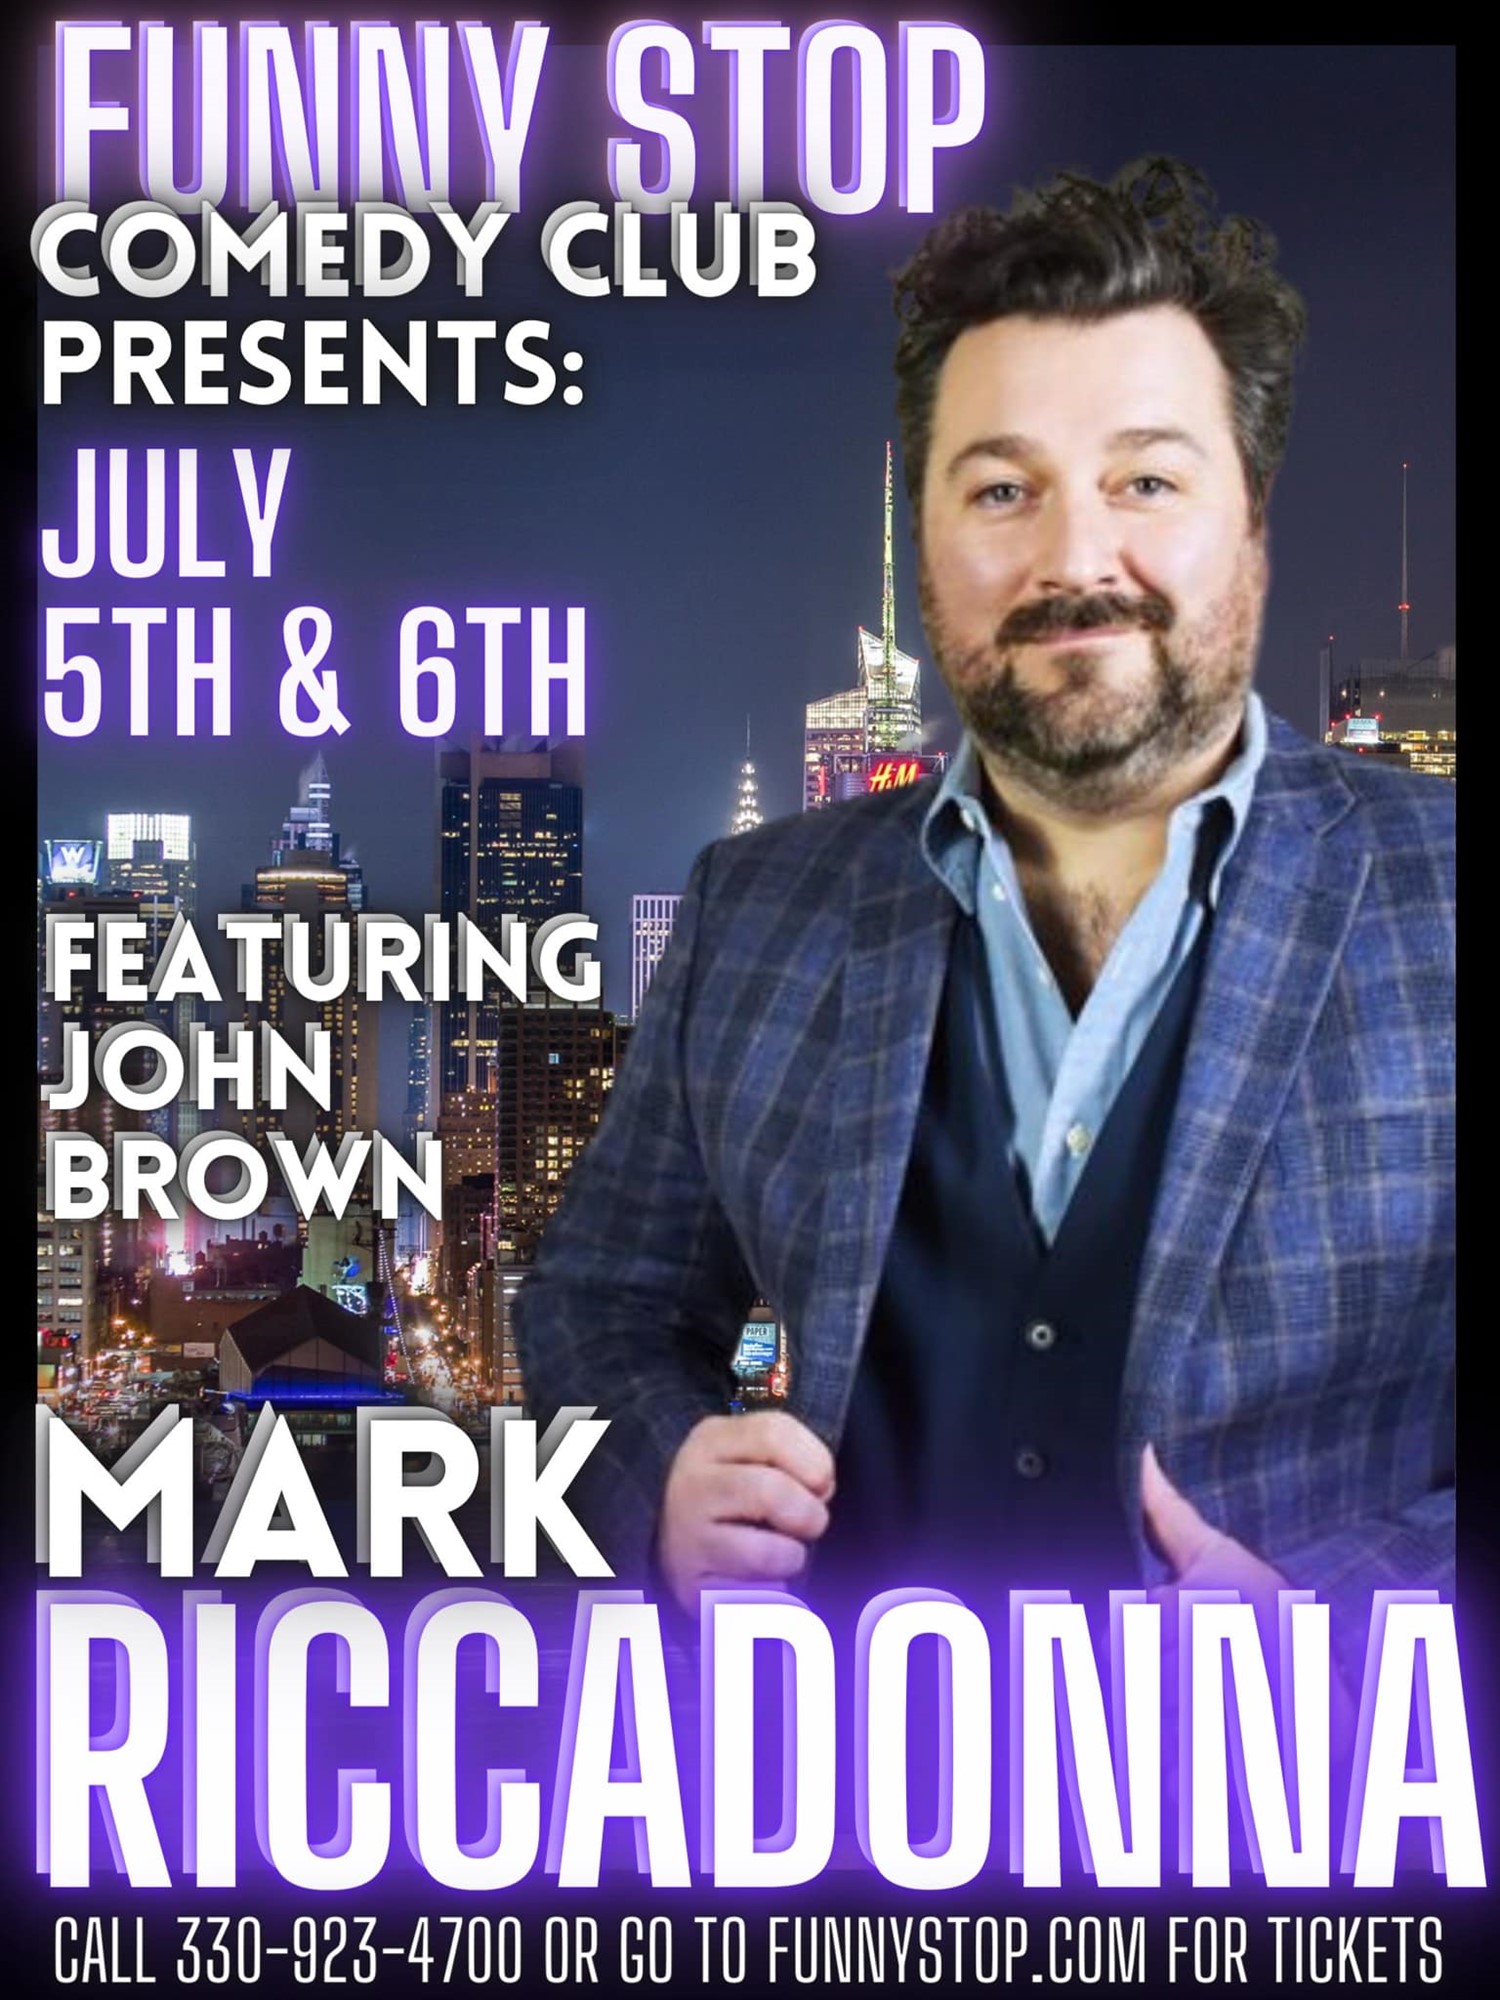 Mark Riccadonna - Fri. 7:30 PM Show Headlines at Funny Stop Comedy Club on jul. 05, 19:30@Funny Stop Comedy Club - Compra entradas y obtén información enFunny Stop funnystop.online